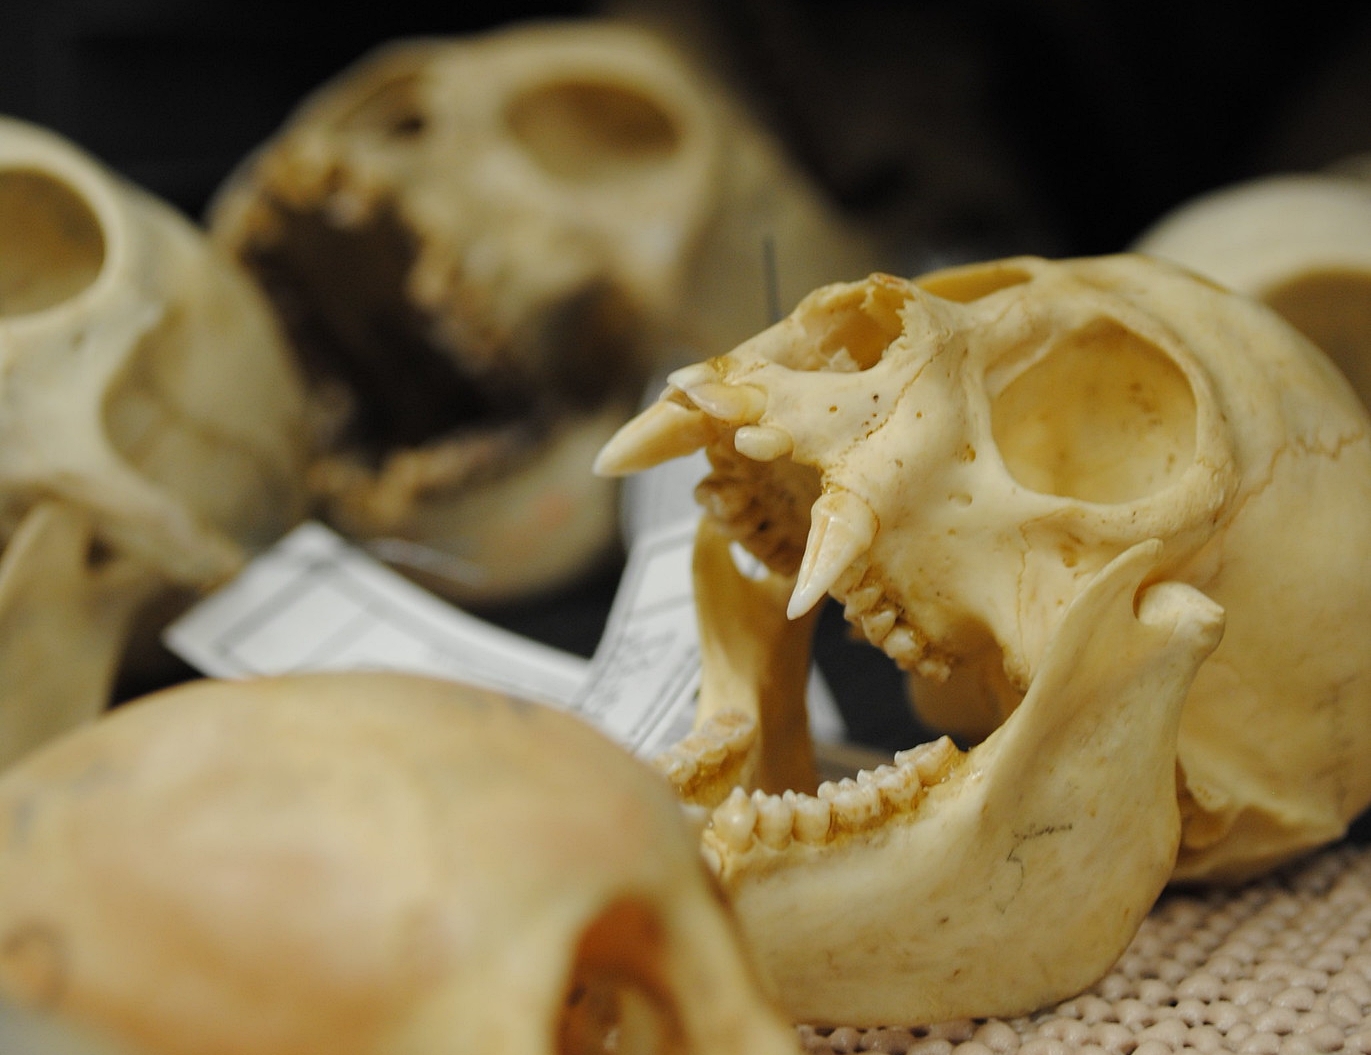 Les autorités françaises ont confisqué des centaines de crânes de singes envoyés du Cameroun